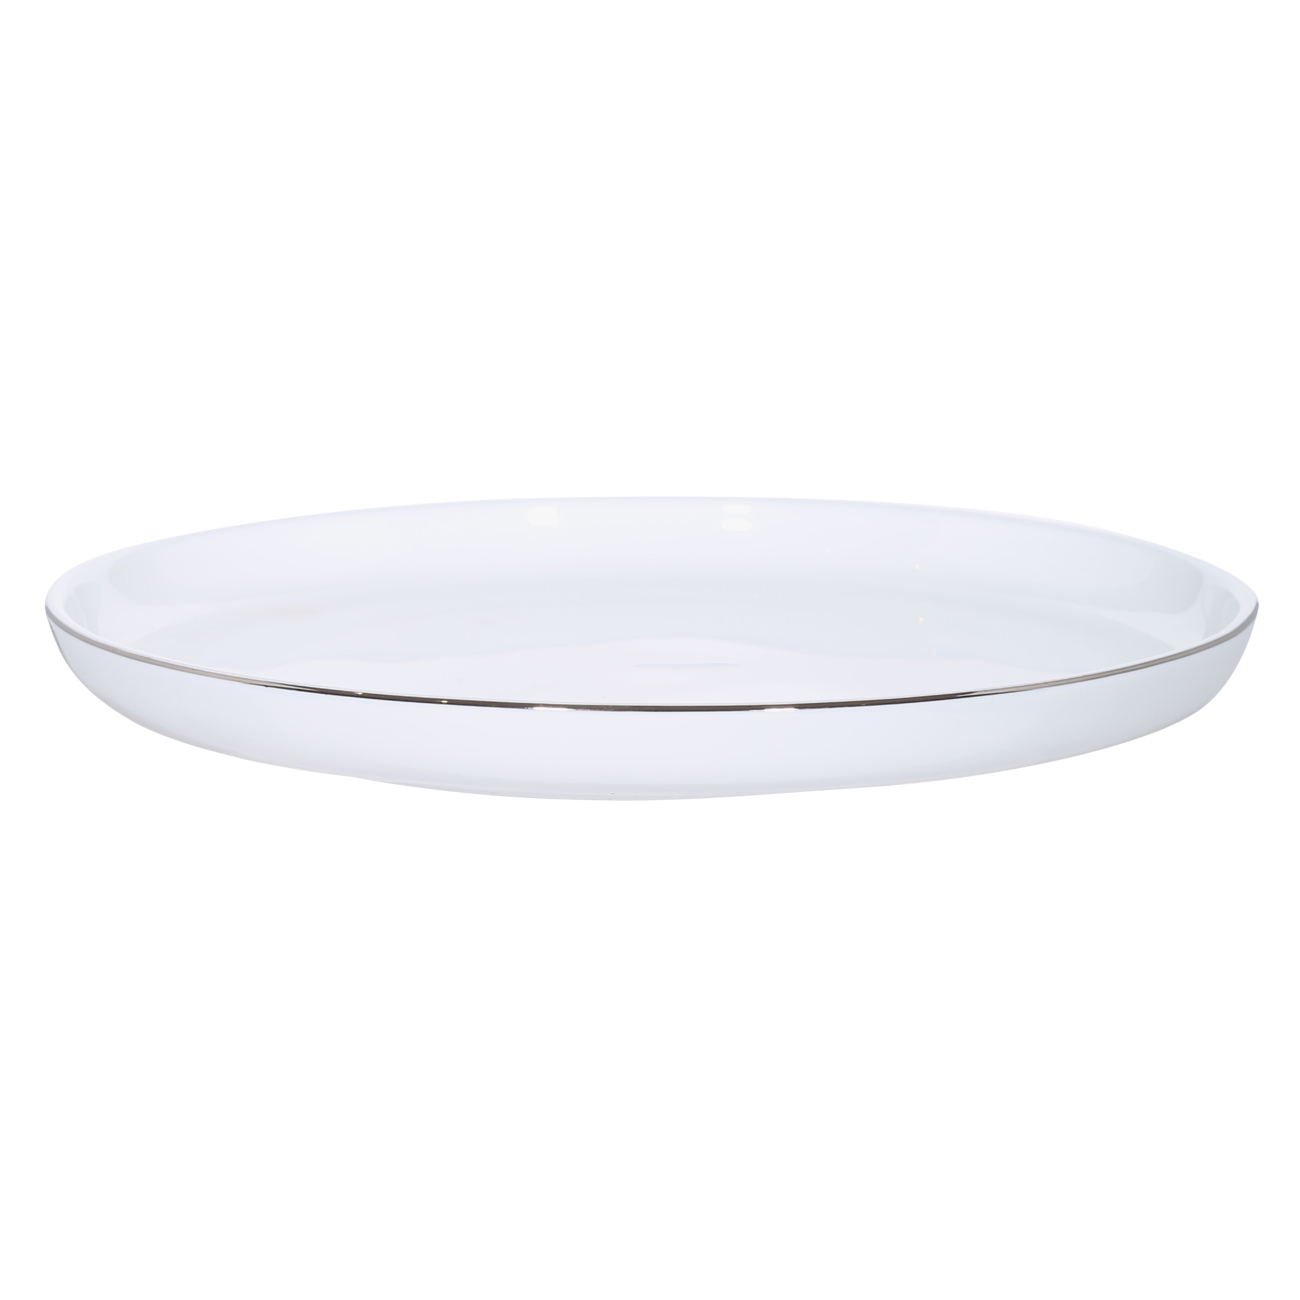 Тарелка десертная, 20 см, 2 шт, фарфор F, белая, Ideal silver изображение № 3